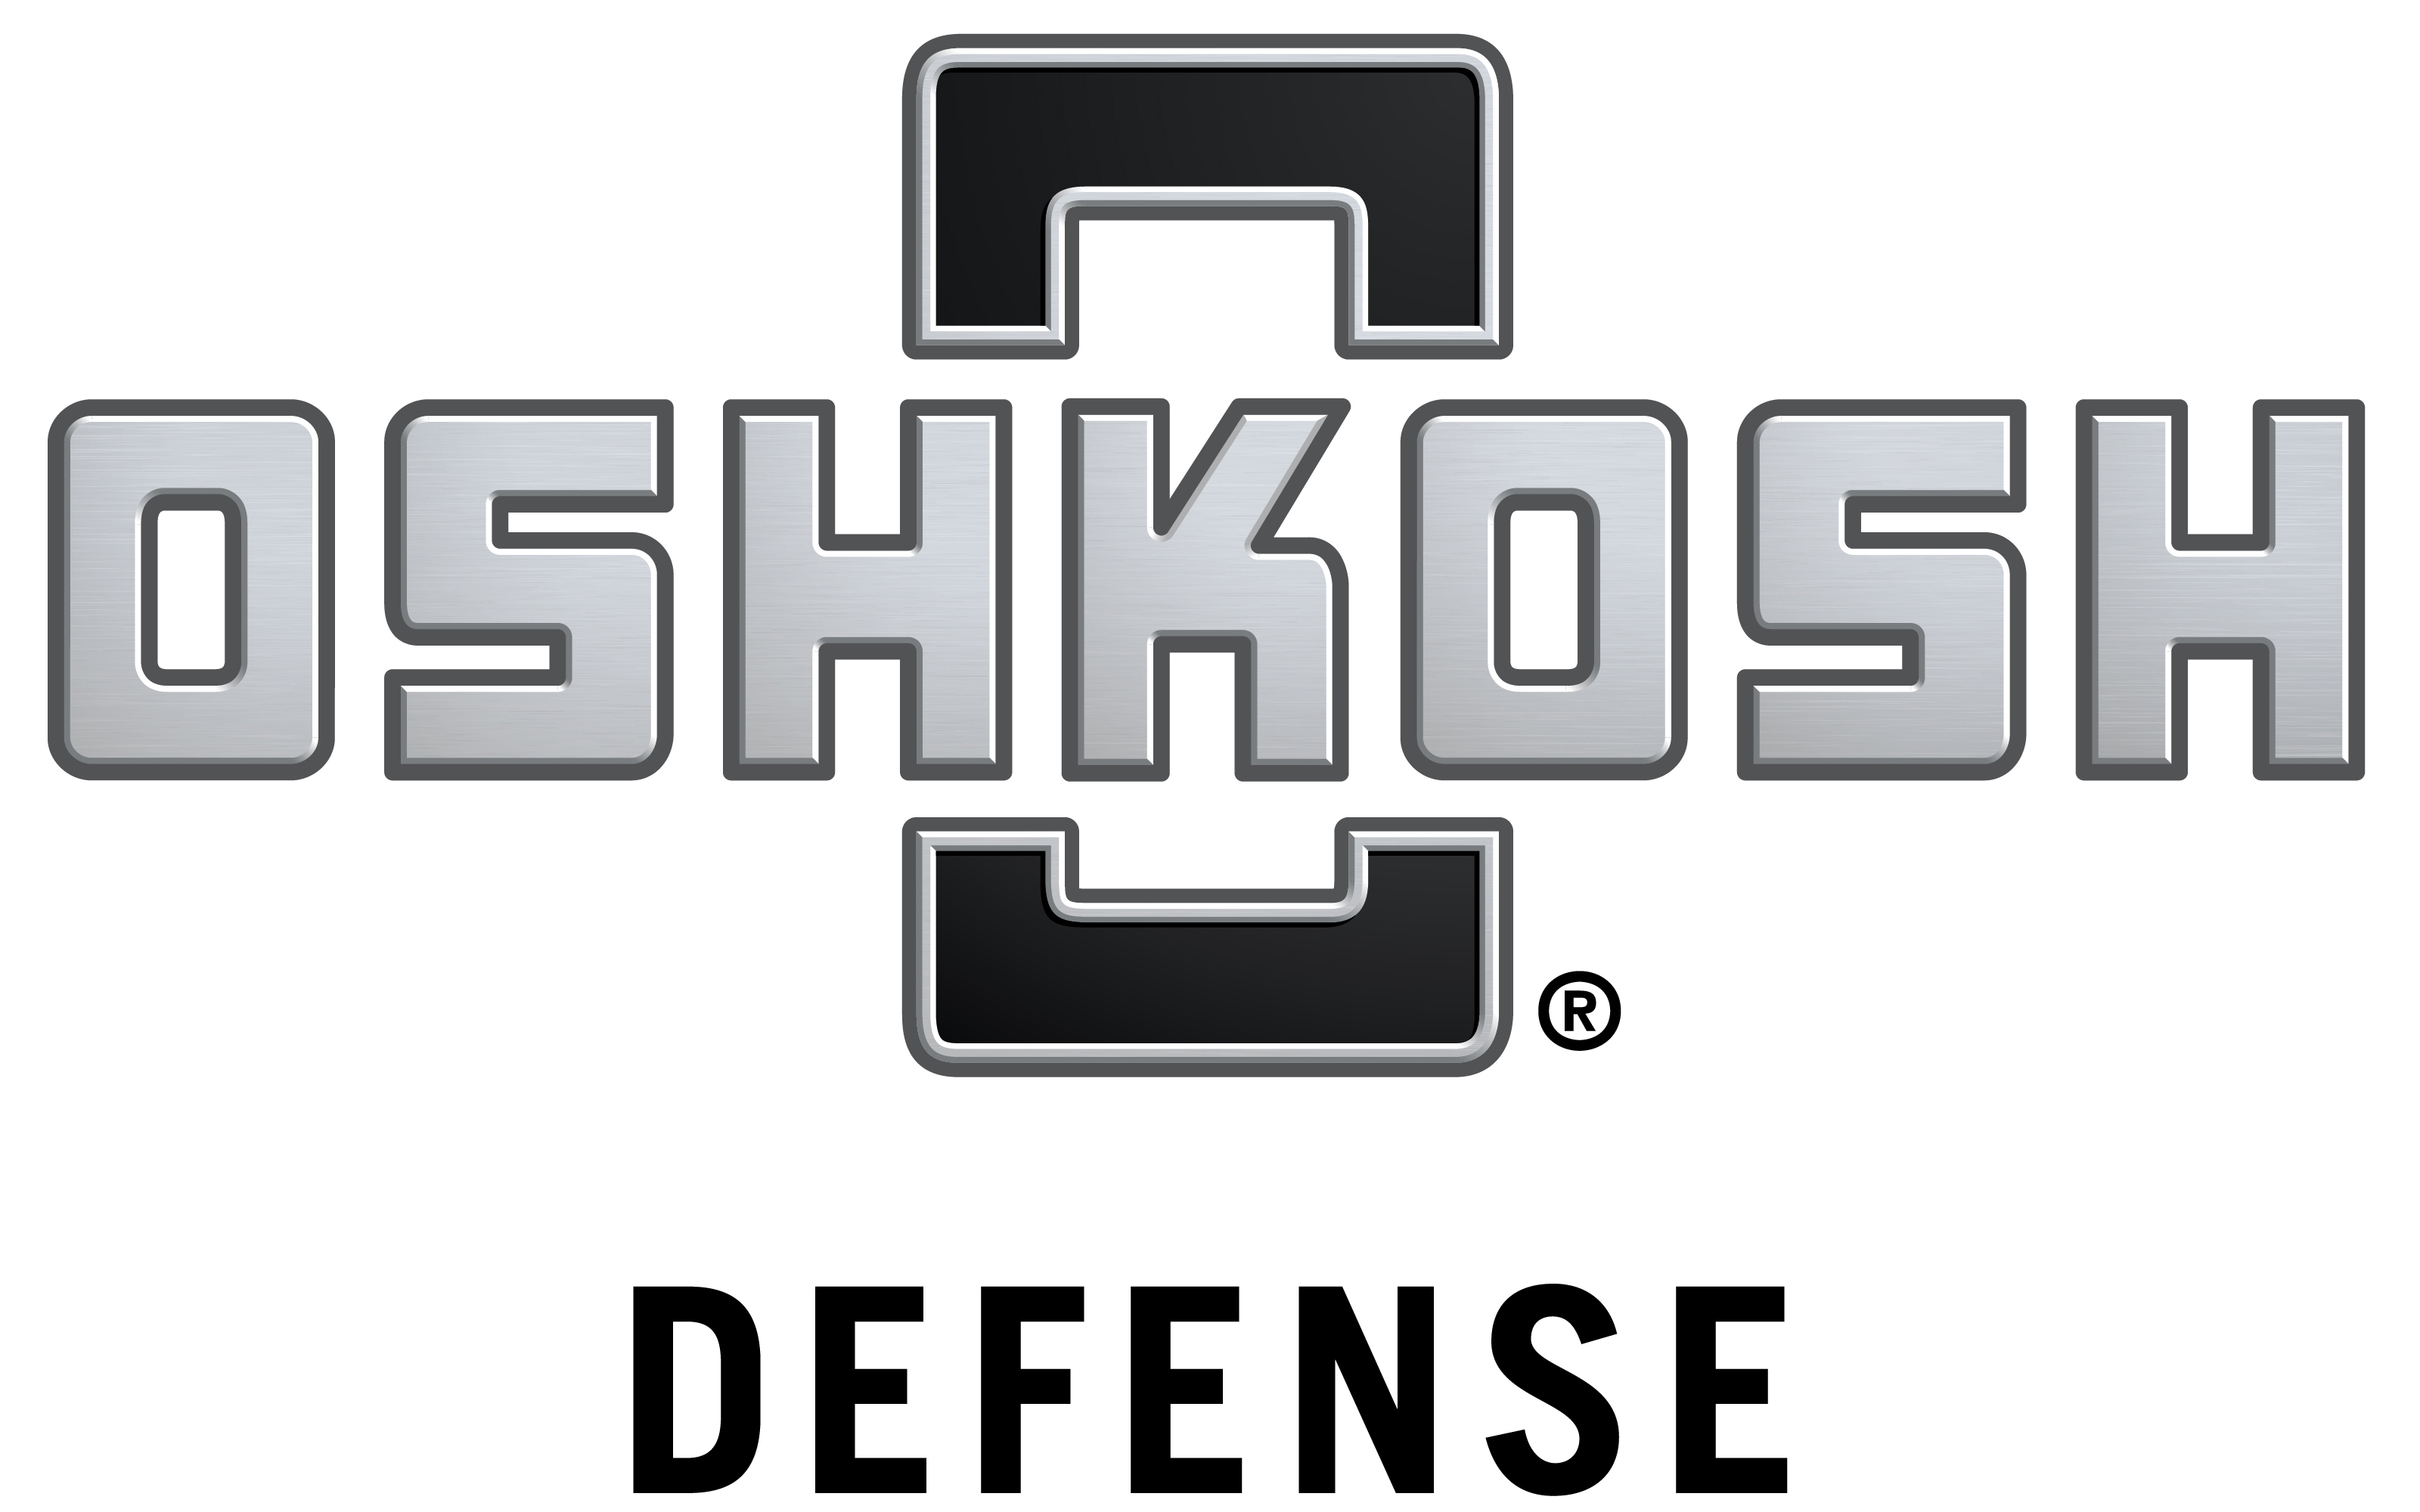 Oshkosh Defense Logo